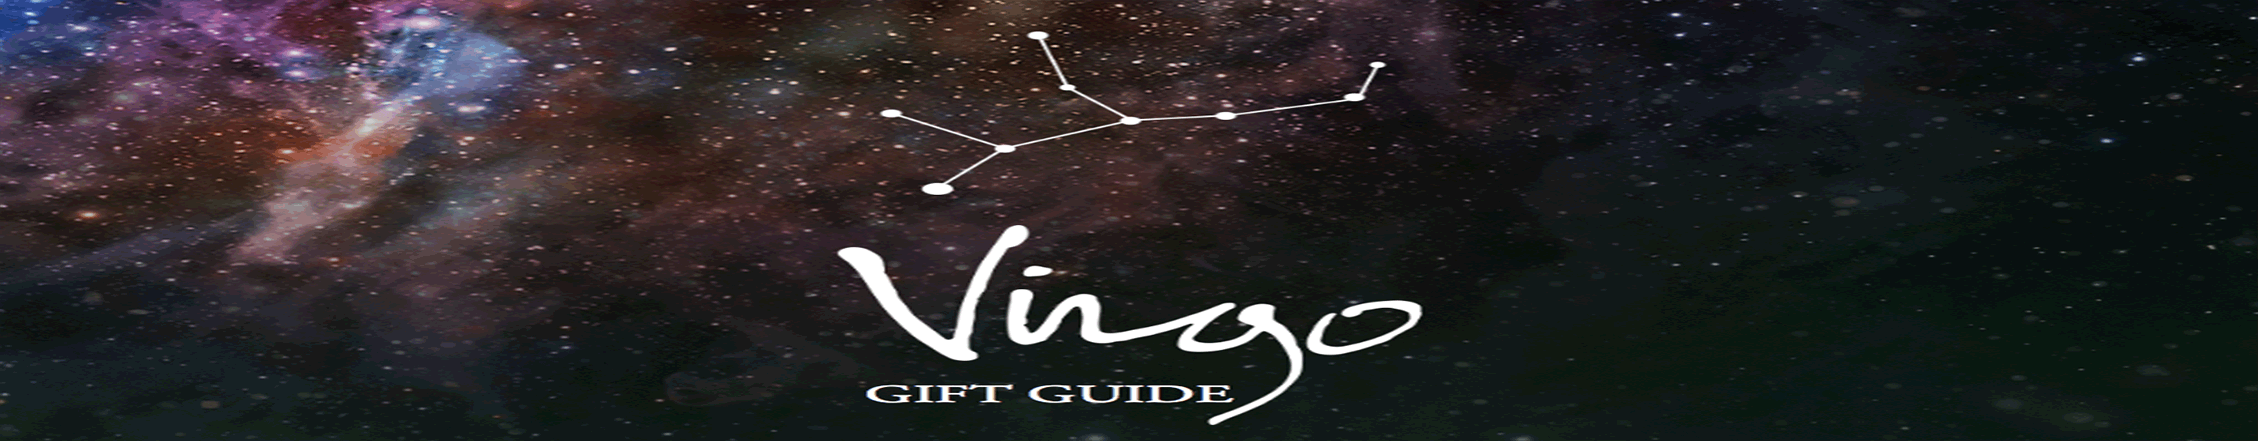 astrology zone susan miller virgo